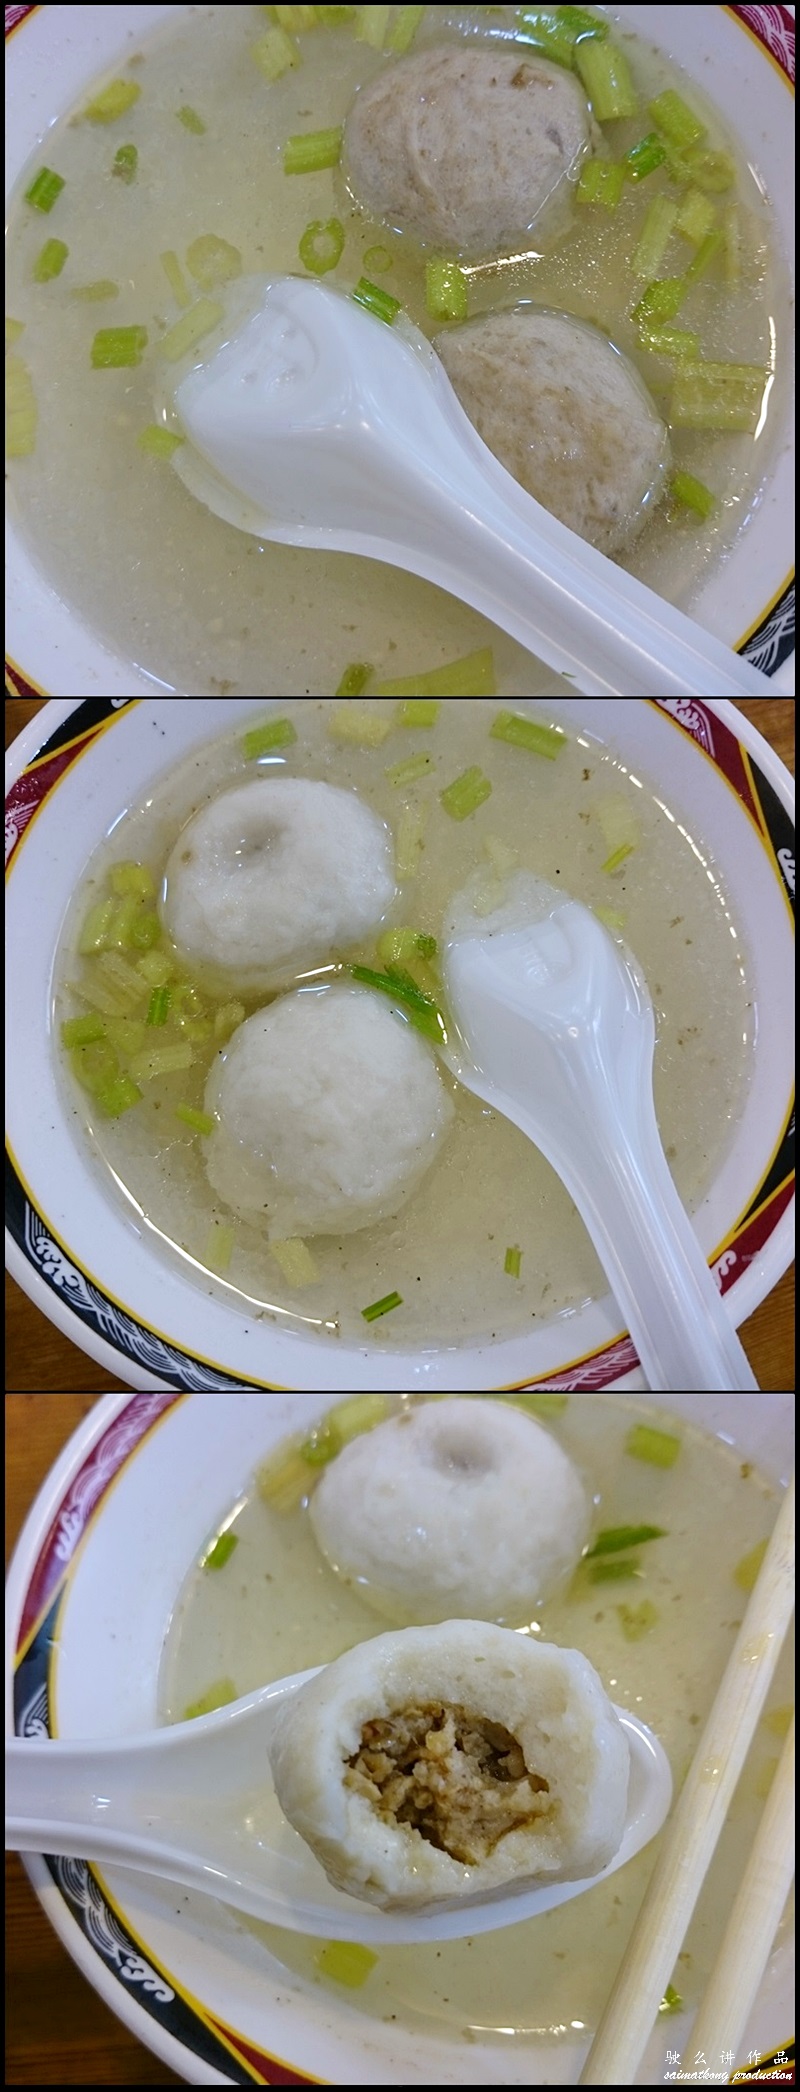 Tian Tian Li 天天利美食坊 : Fishball & Meatballs